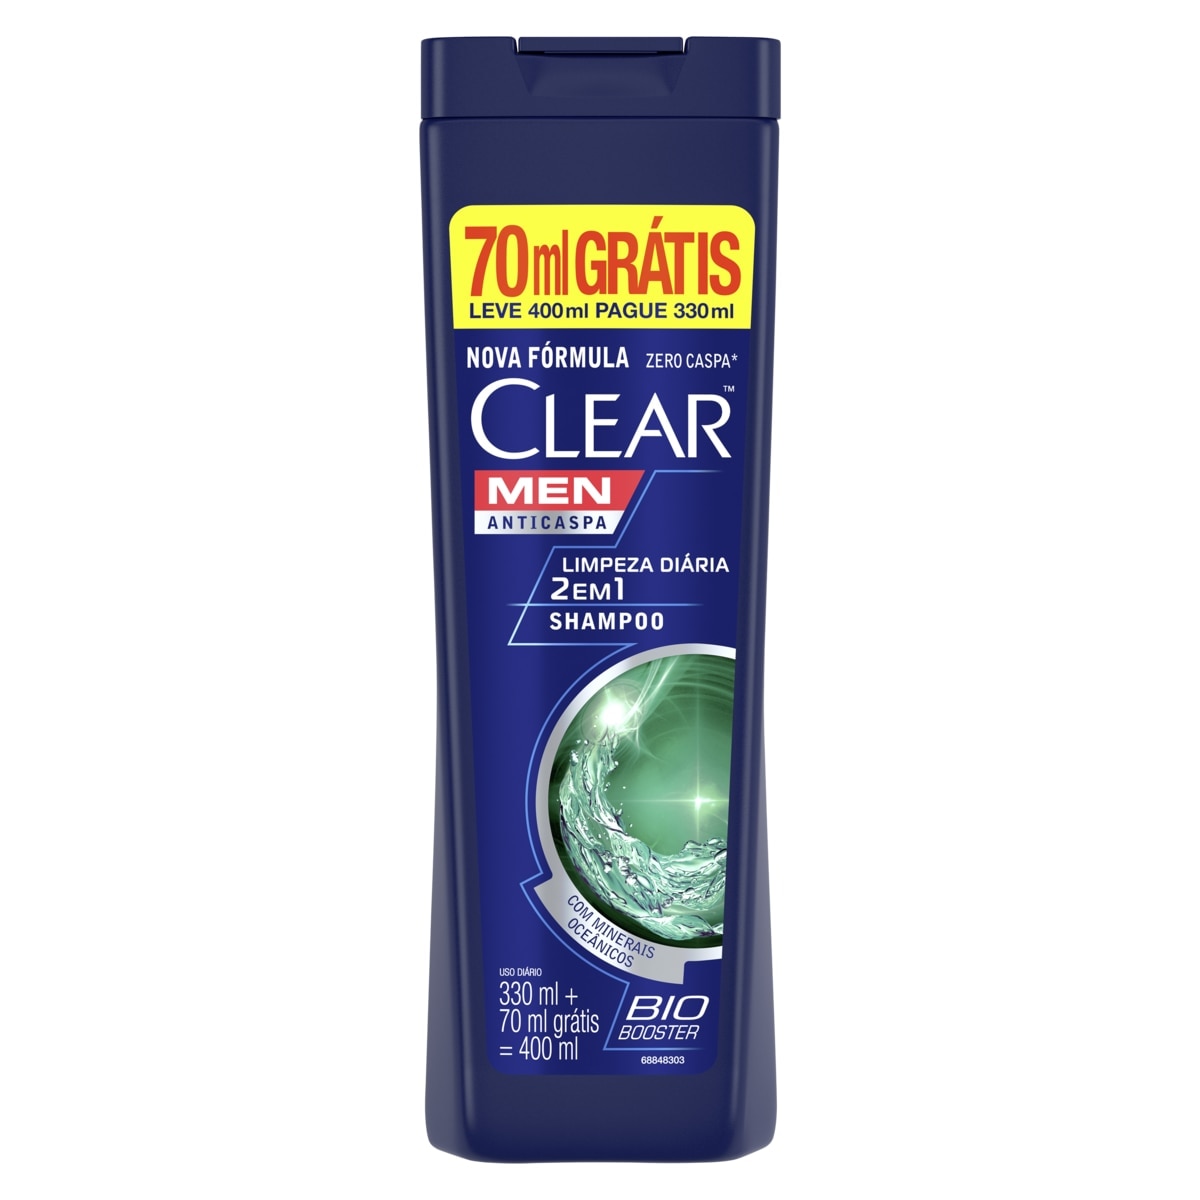 Shampoo Clear Men Anticaspa Limpeza Diaria 2 em 1 Leve 400ml Pague 330ml